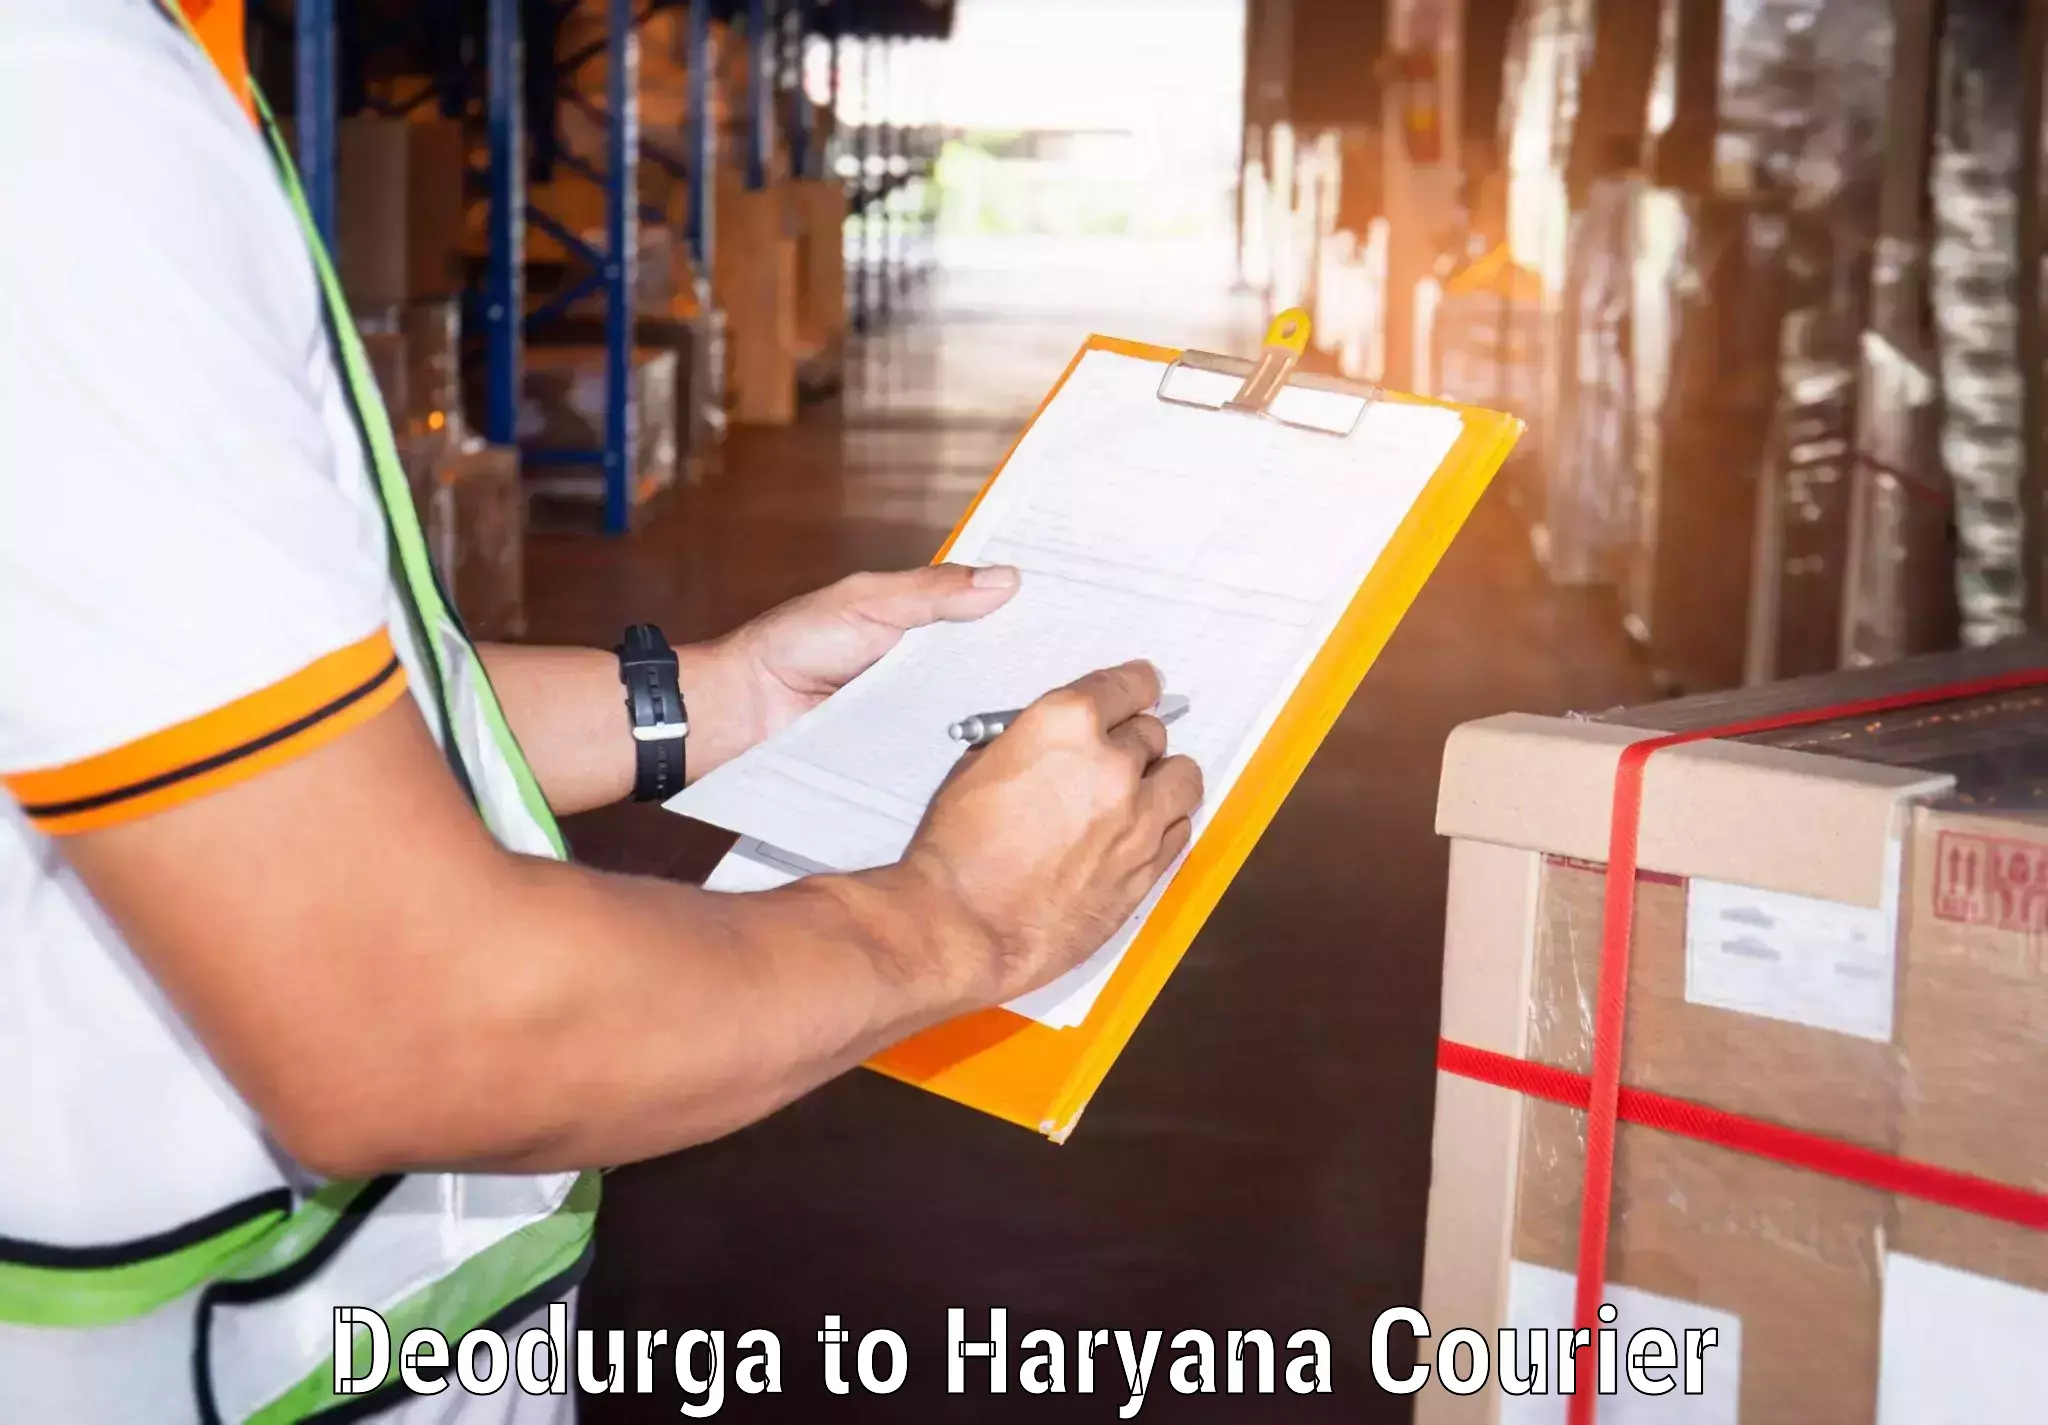 Same day shipping Deodurga to Chaudhary Charan Singh Haryana Agricultural University Hisar